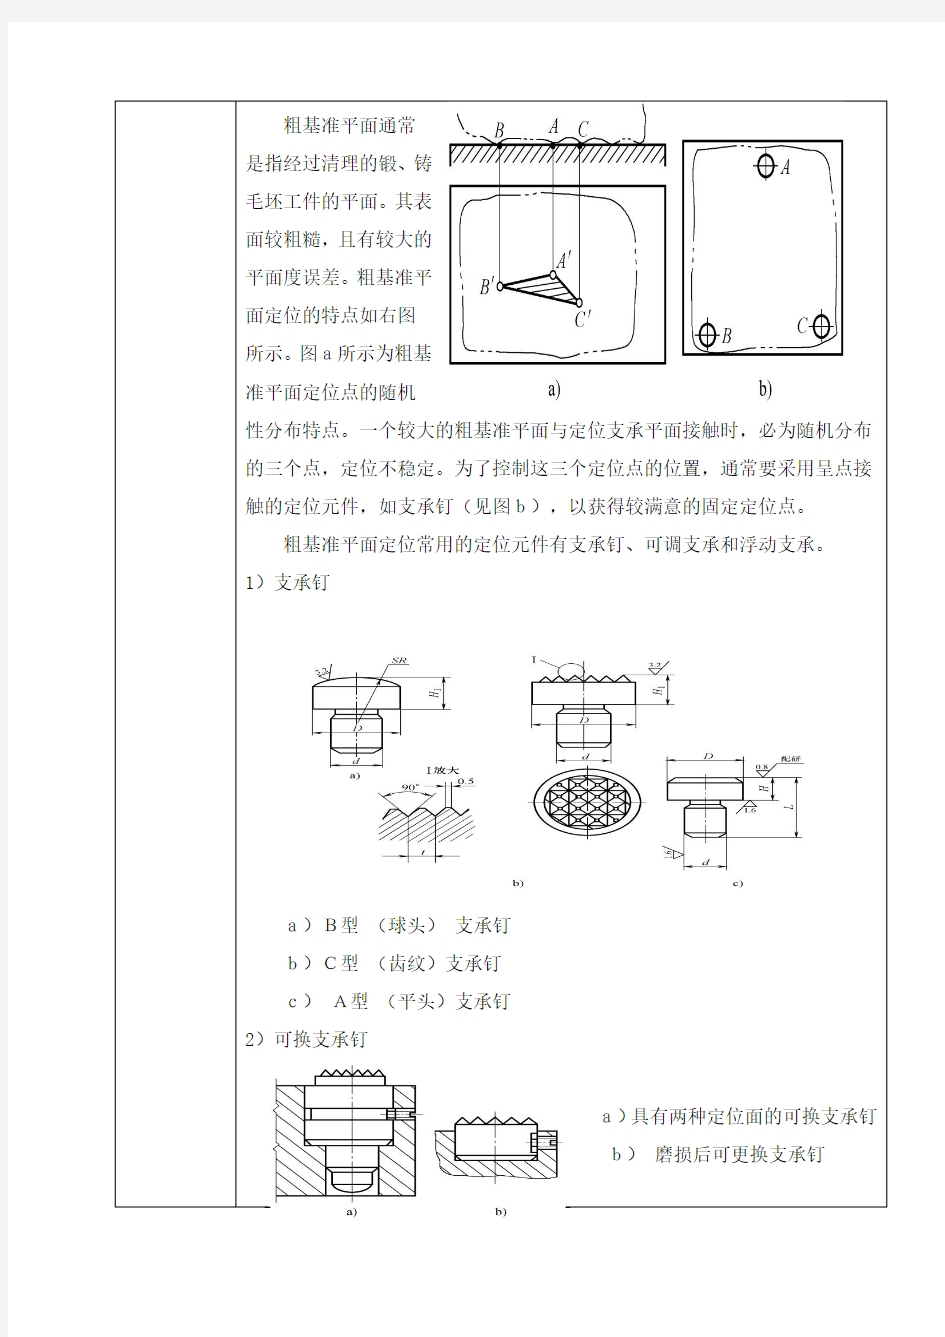 机床夹具设计 第二章 第2节 定位元件设计1、2